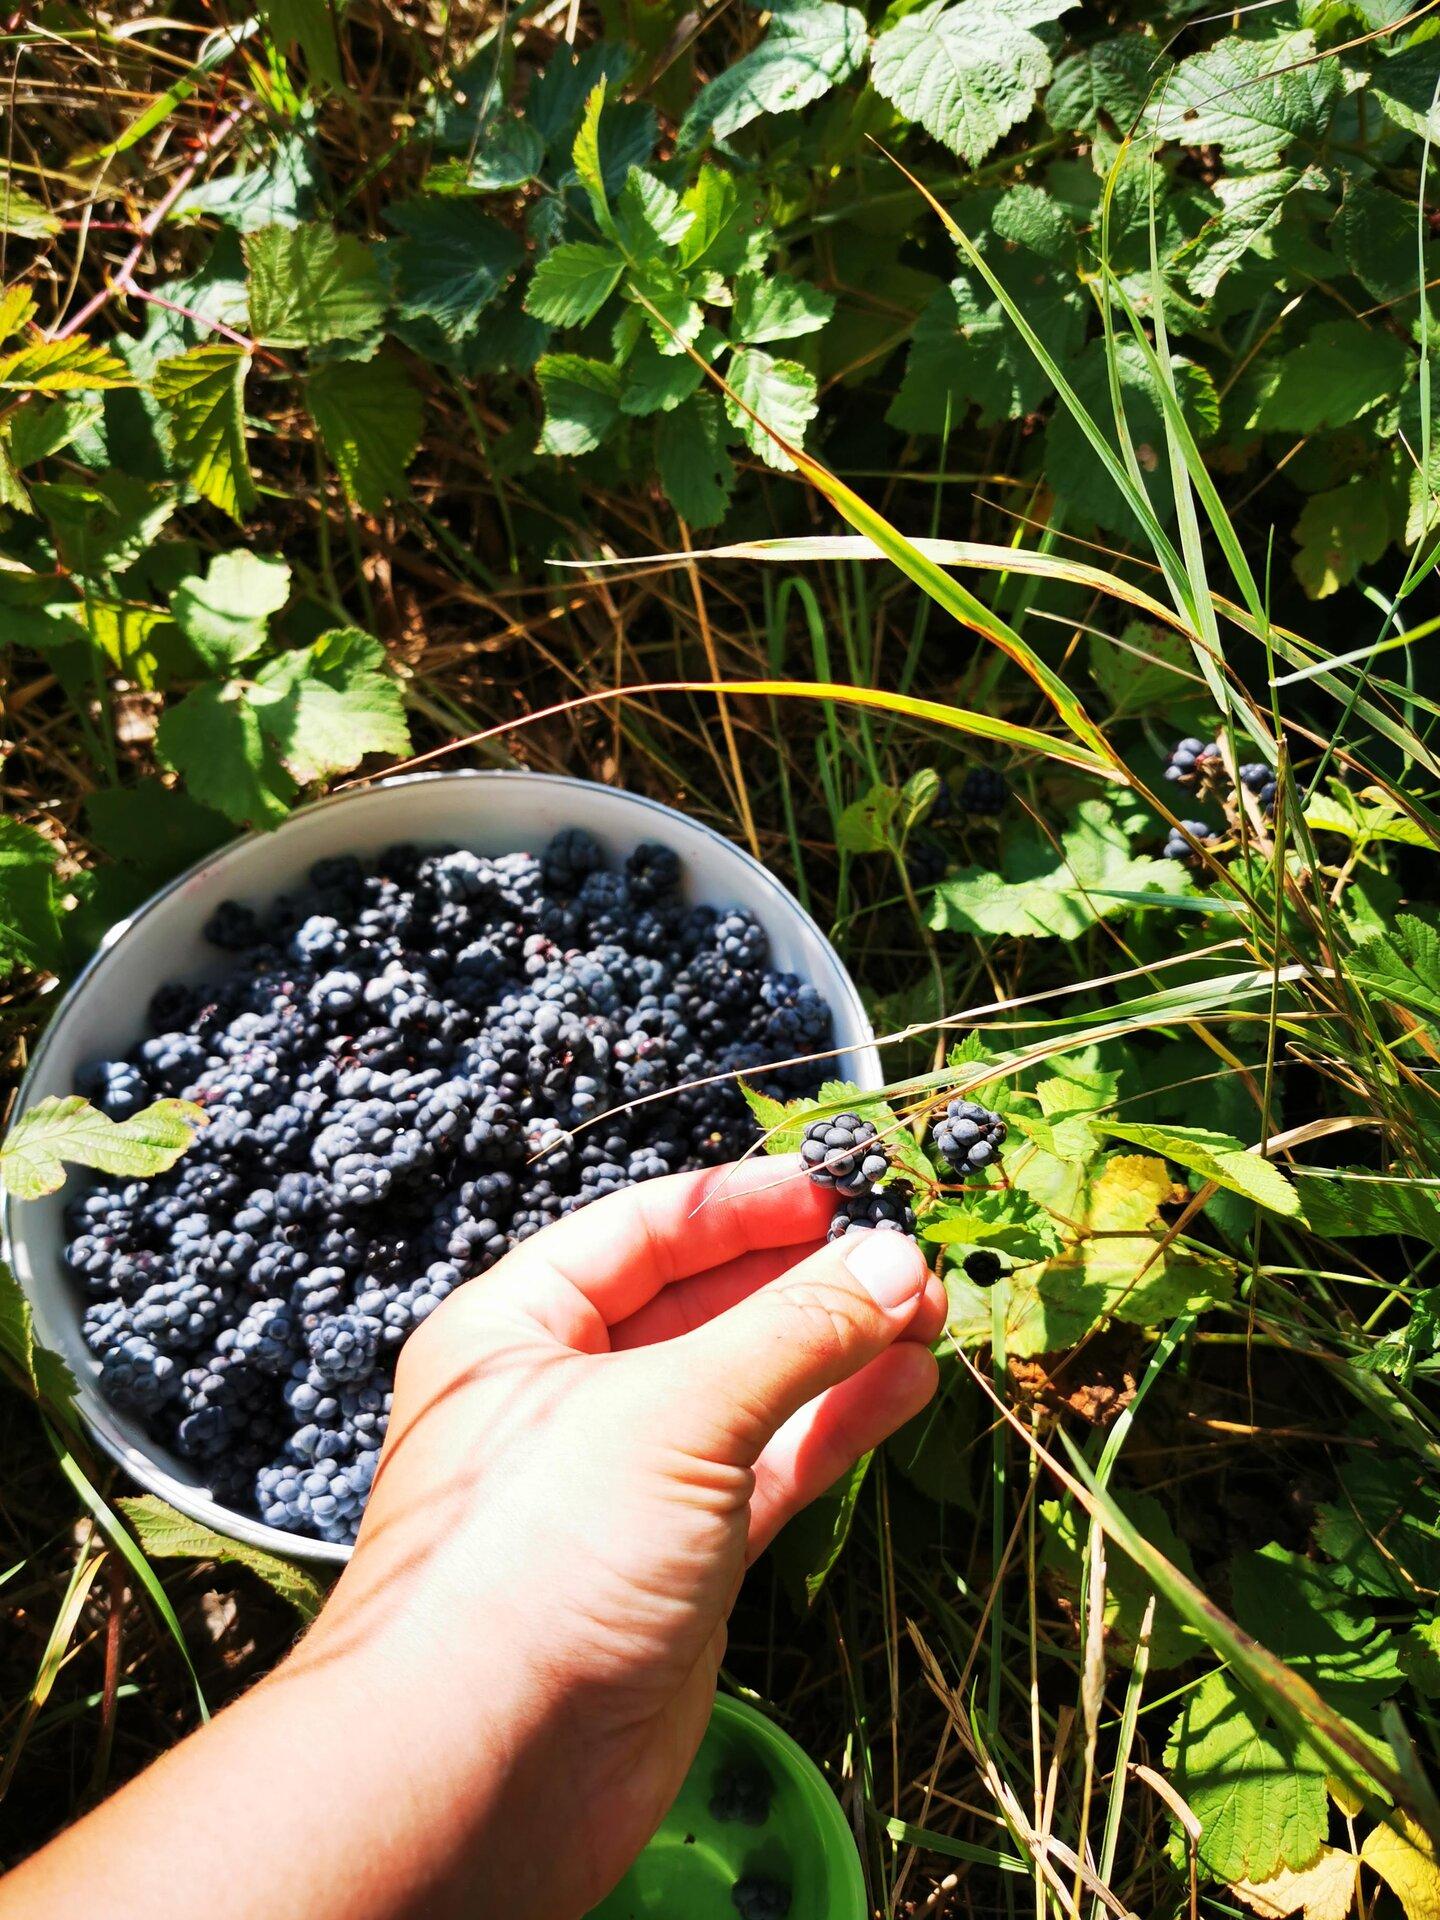 Picking dewberries on Sorgu island